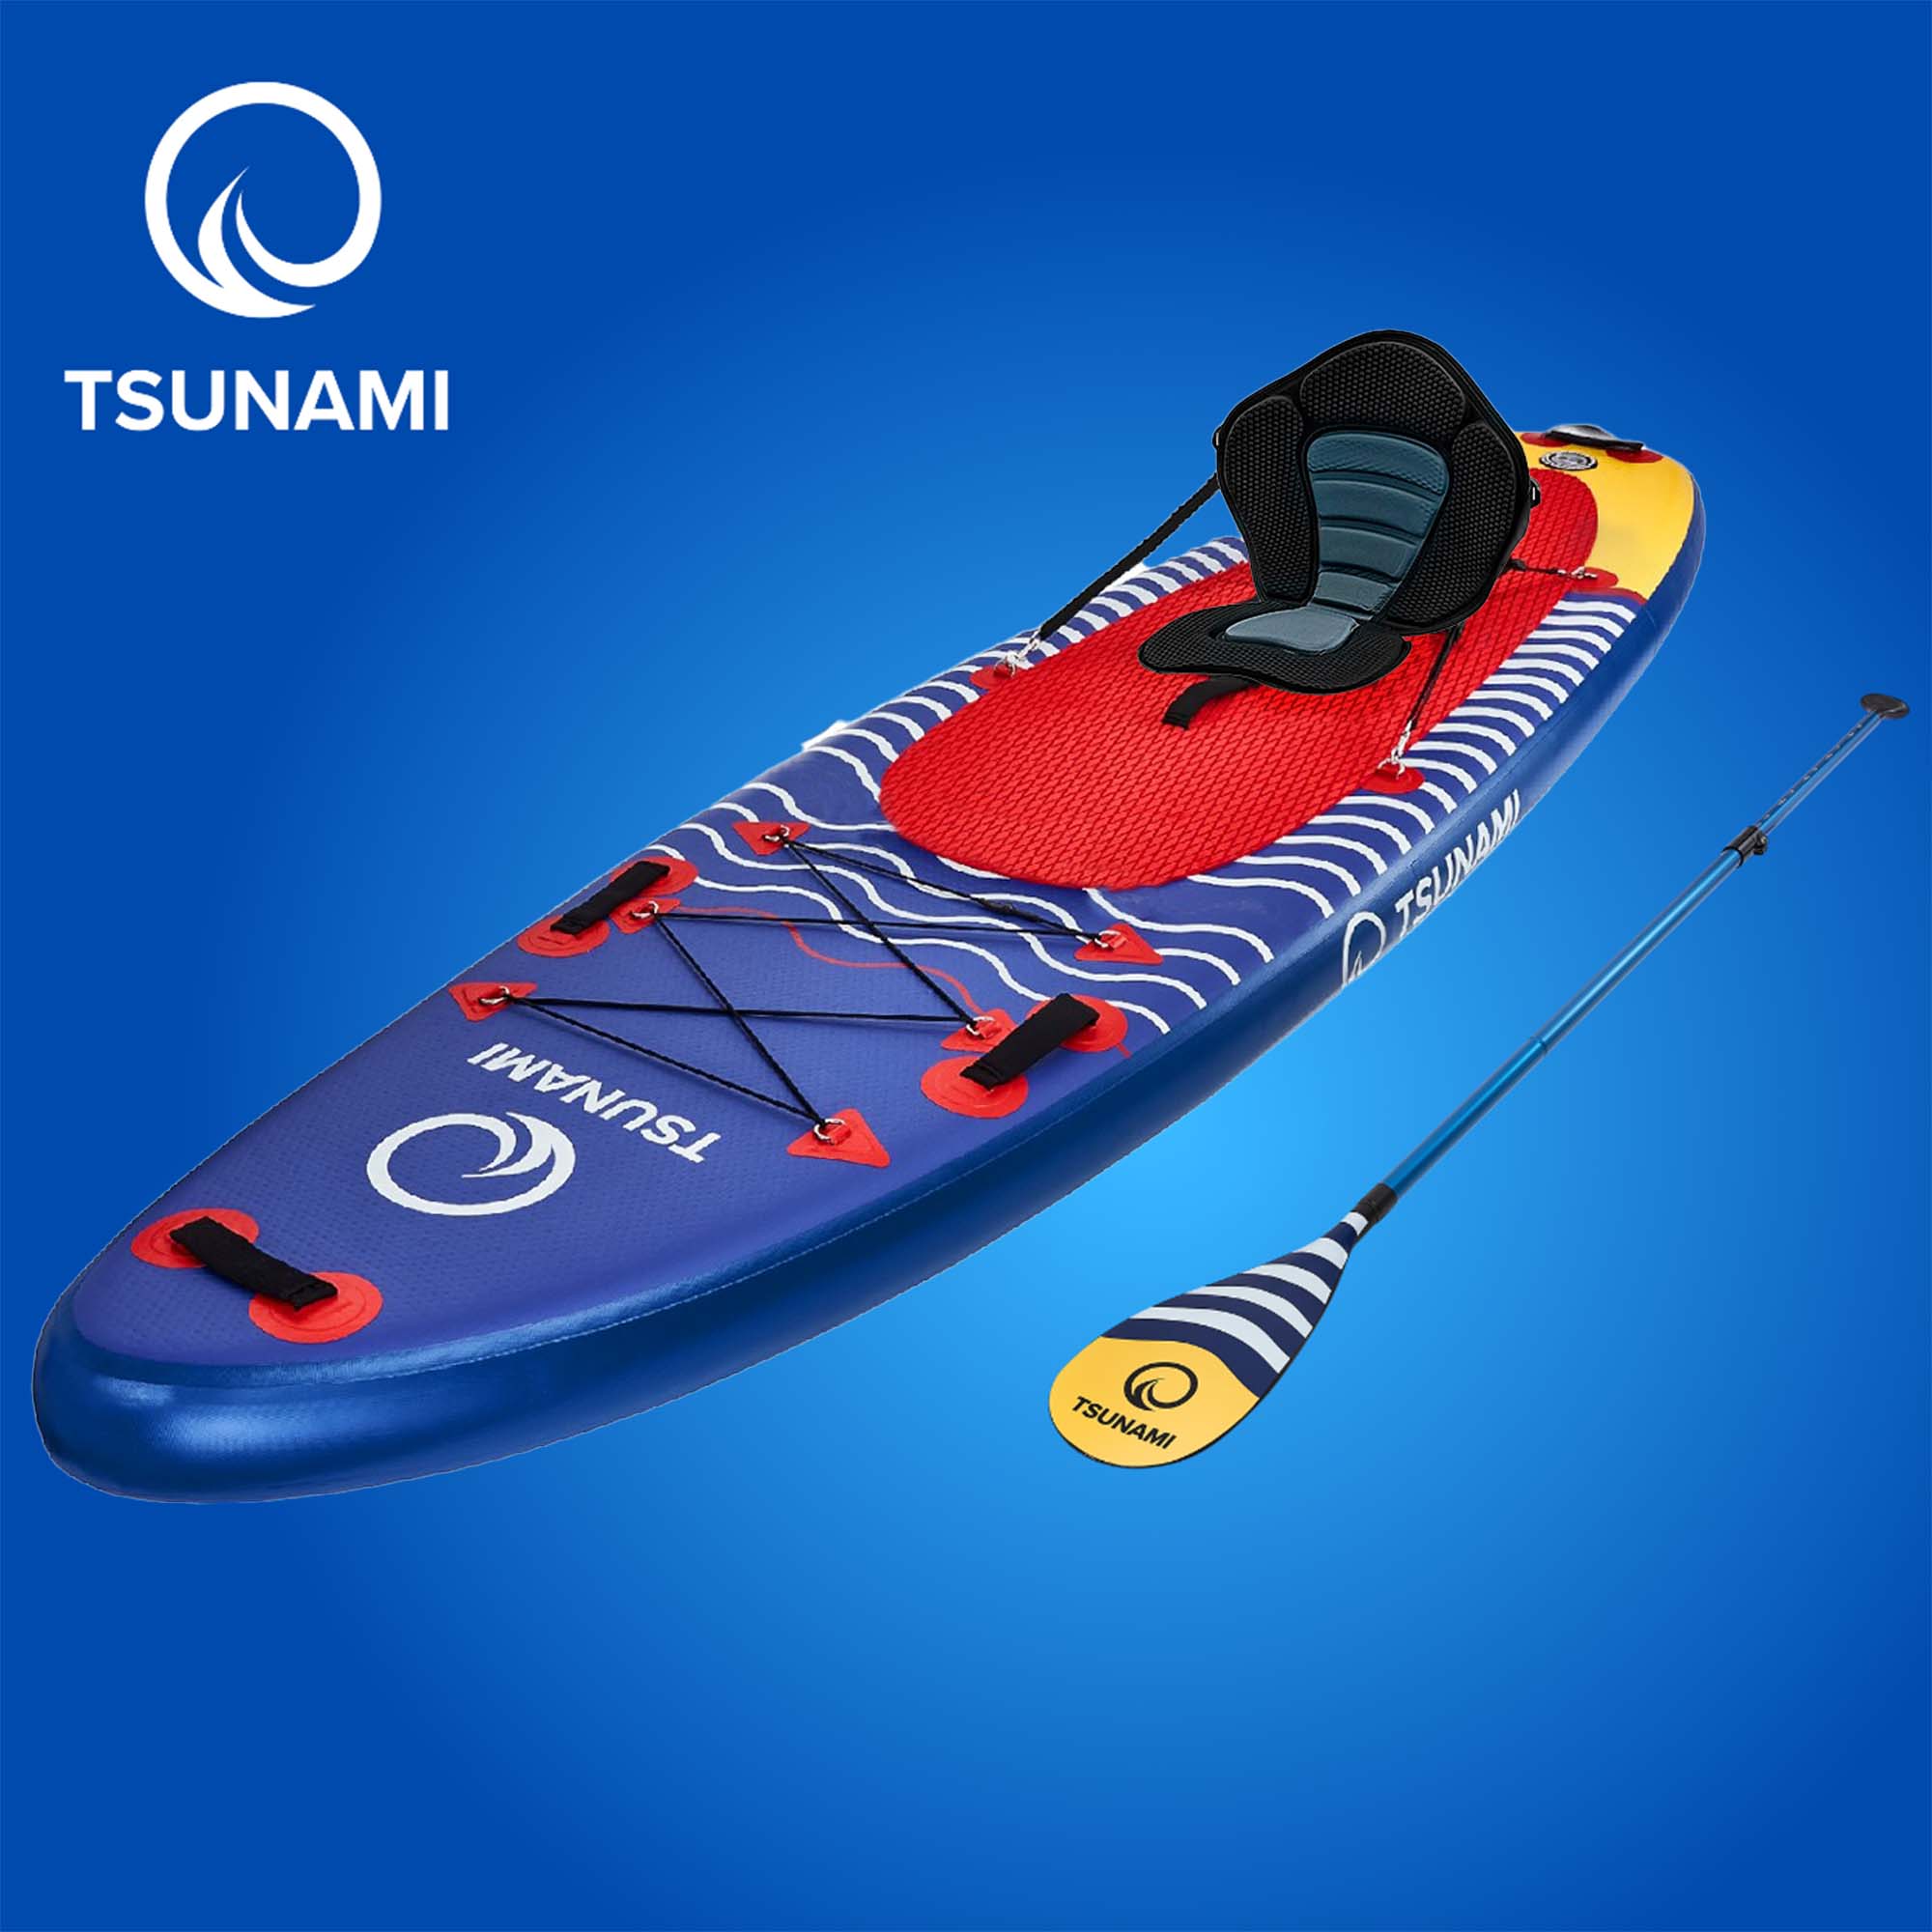 Deska-SUP-TSUNAMI-paddle-board-akcesoria-320cm-EAN-5907739314239